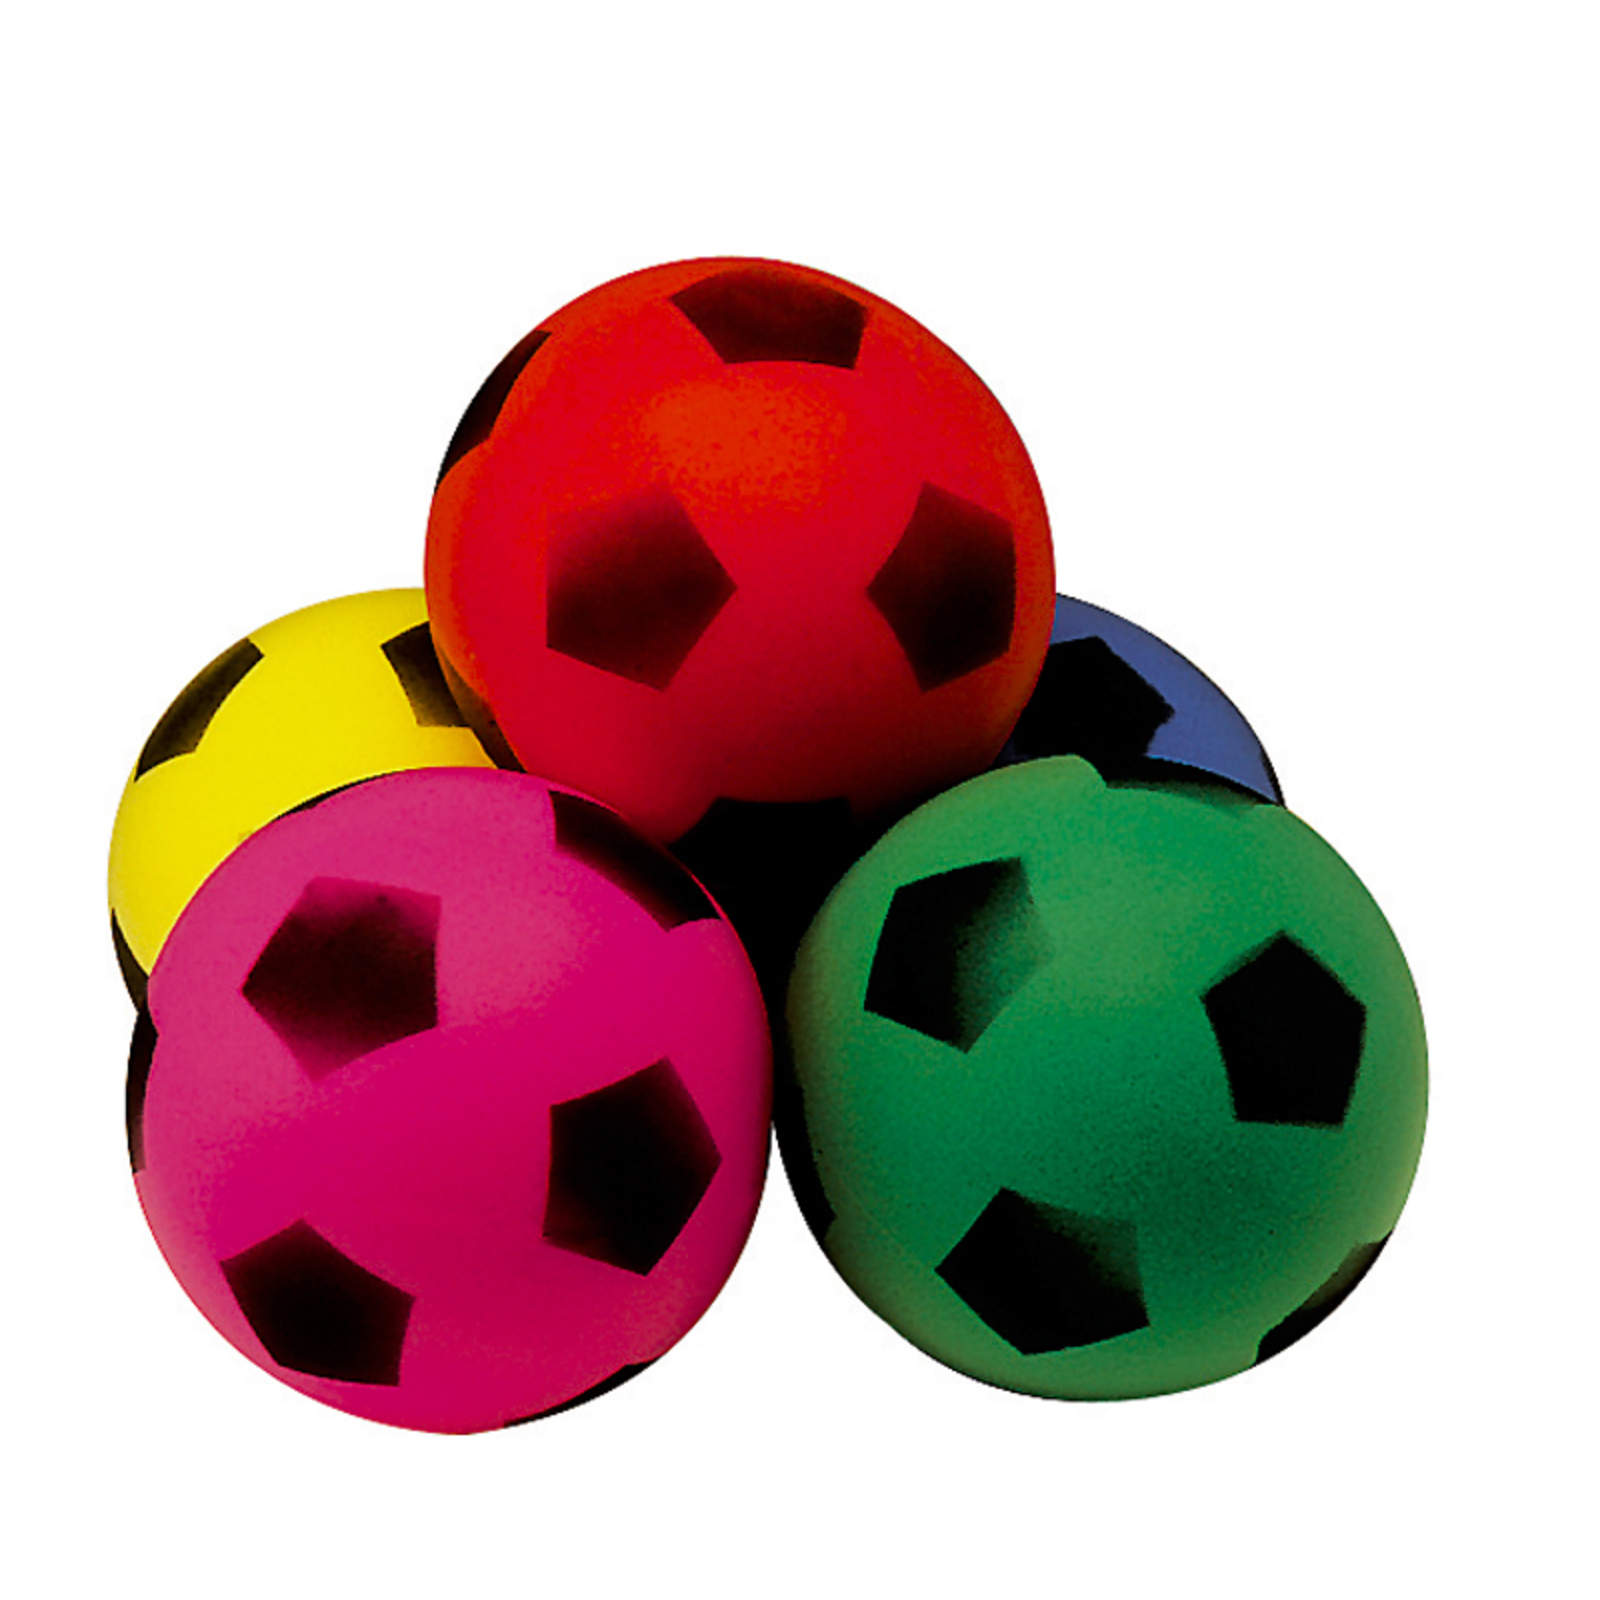 Football Ballons de Football Balles Imprimé Tissu Poly Coton Rouge Et Ou  Bleu